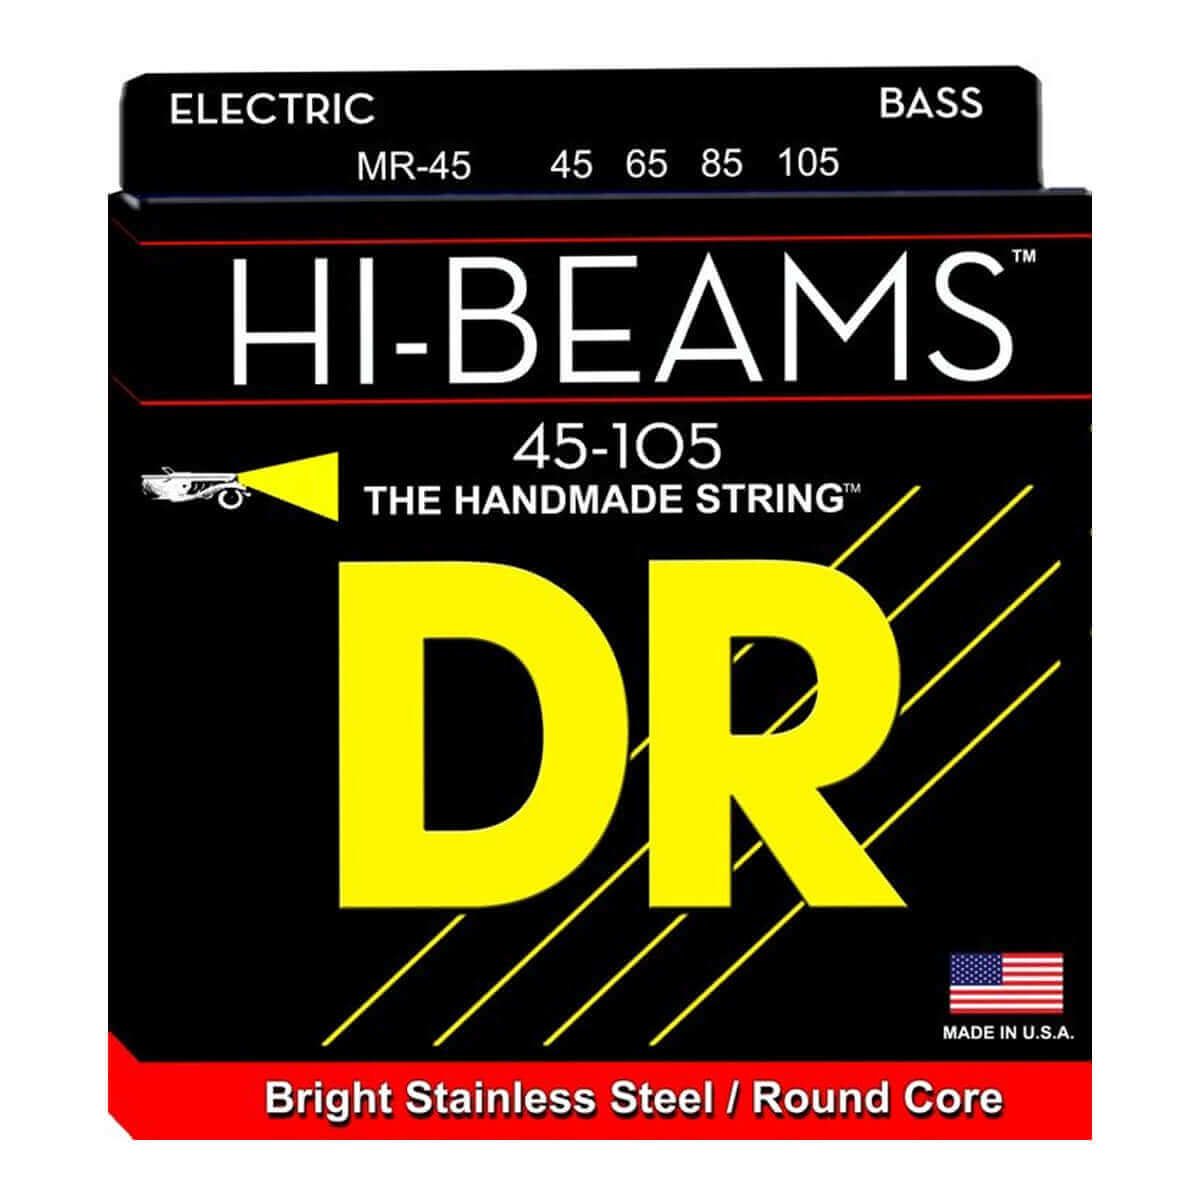 DR Hi-Beam 4 (45-105) Cuerdas de Bajo Eléctrico - Descripción Las cuerdas para bajos de acero inoxidable Hi-Beams™ son enrolladas y construidas sobre un núcleo redondo que es único en la industria. Para fabricar la cuerdas Hi-Beams™ se requiere mucho más